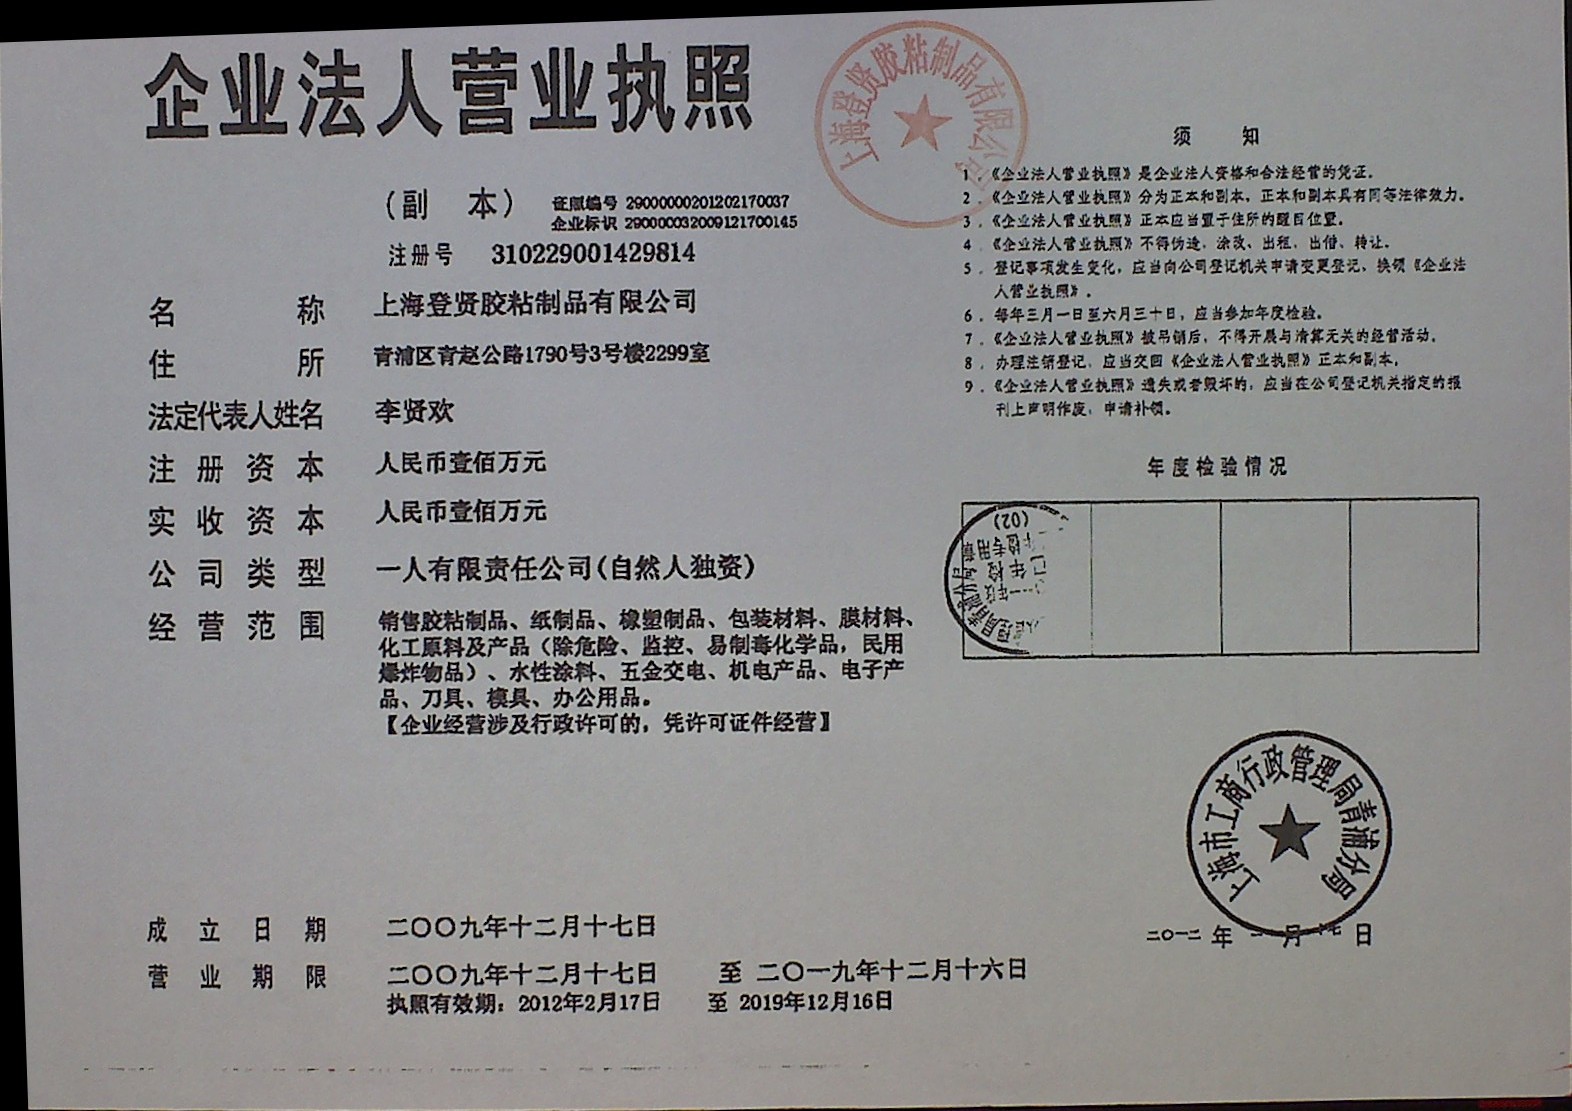 Shanghai Dengxian Protective film Manufactures CO.LTD